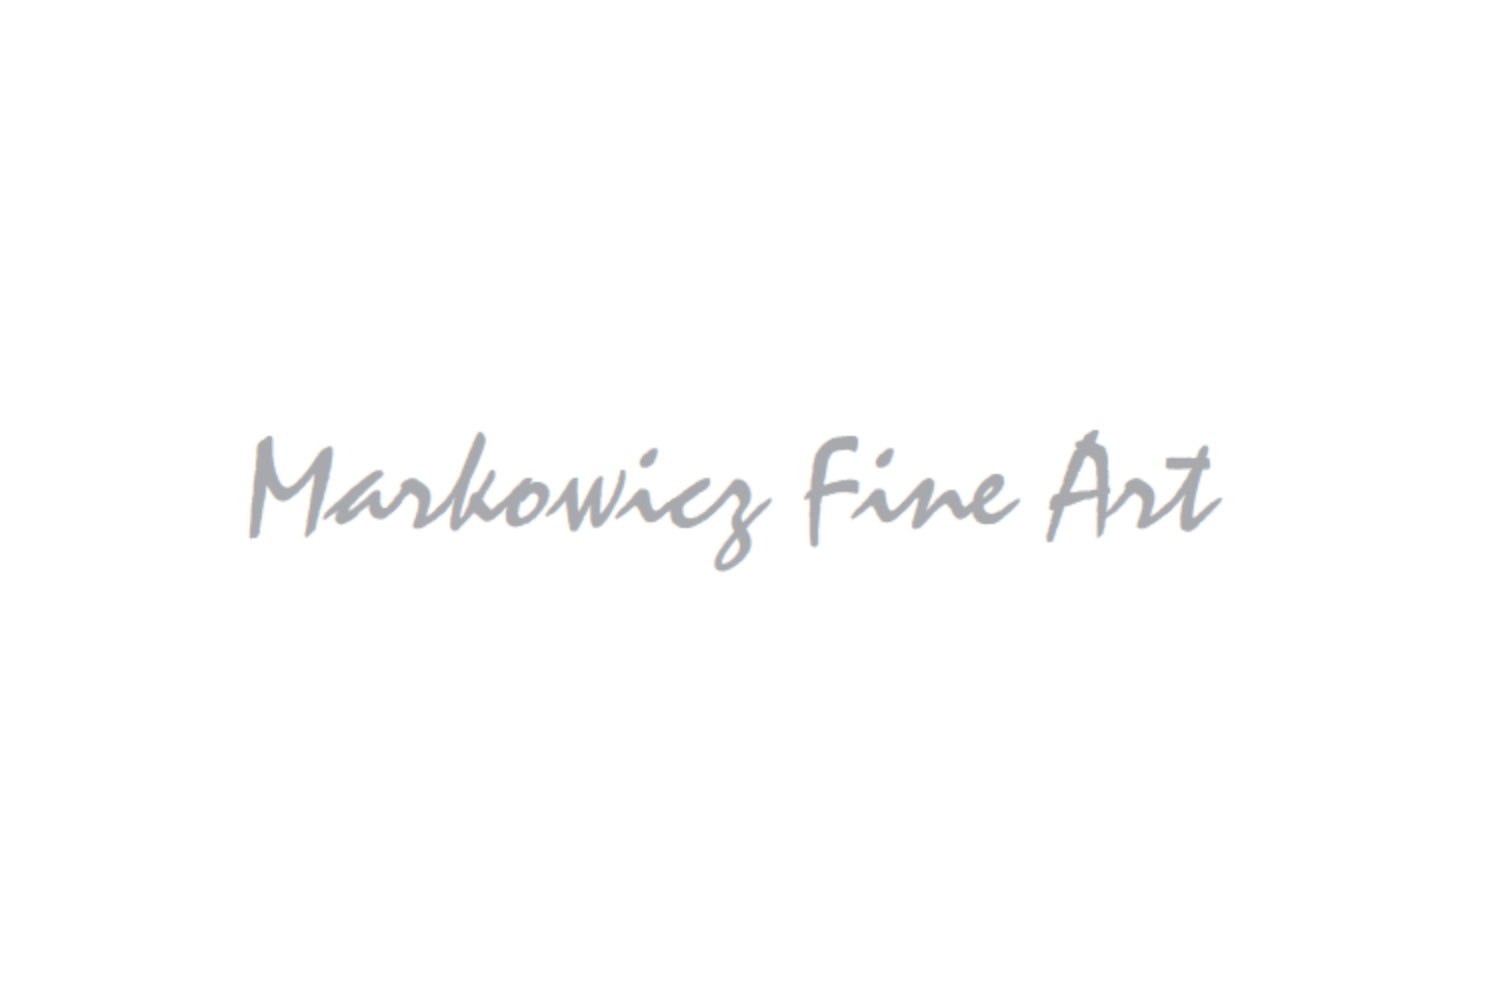 MARKOWICZ FINE ARTS